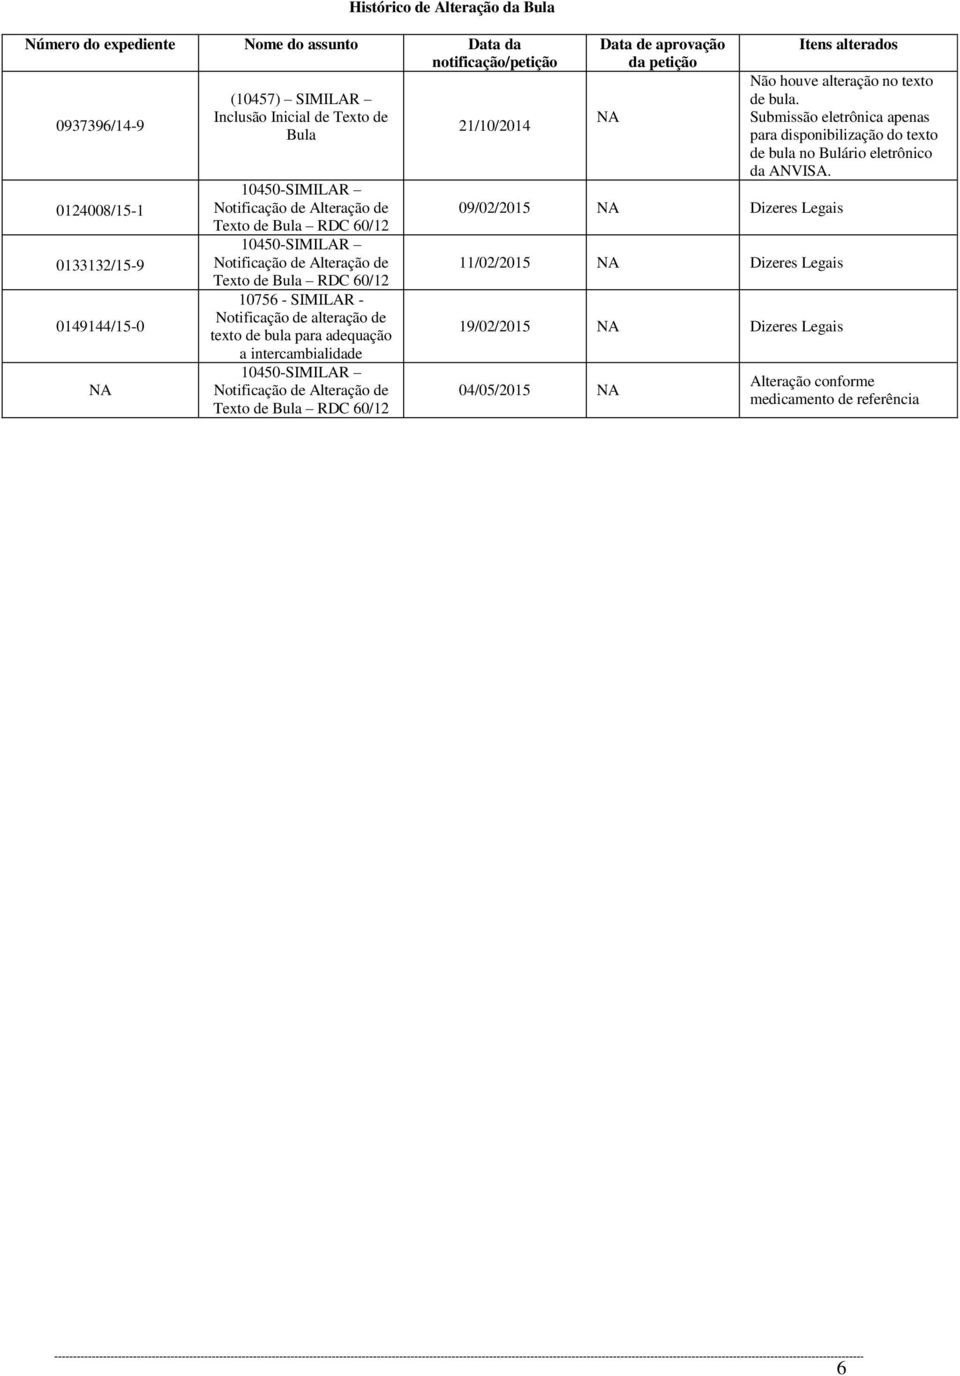 para adequação a intercambialidade 10450-SIMILAR Notificação de Alteração de Texto de Bula RDC 60/12 21/10/2014 Data de aprovação da petição NA 09/02/2015 NA Dizeres Legais 11/02/2015 NA Dizeres